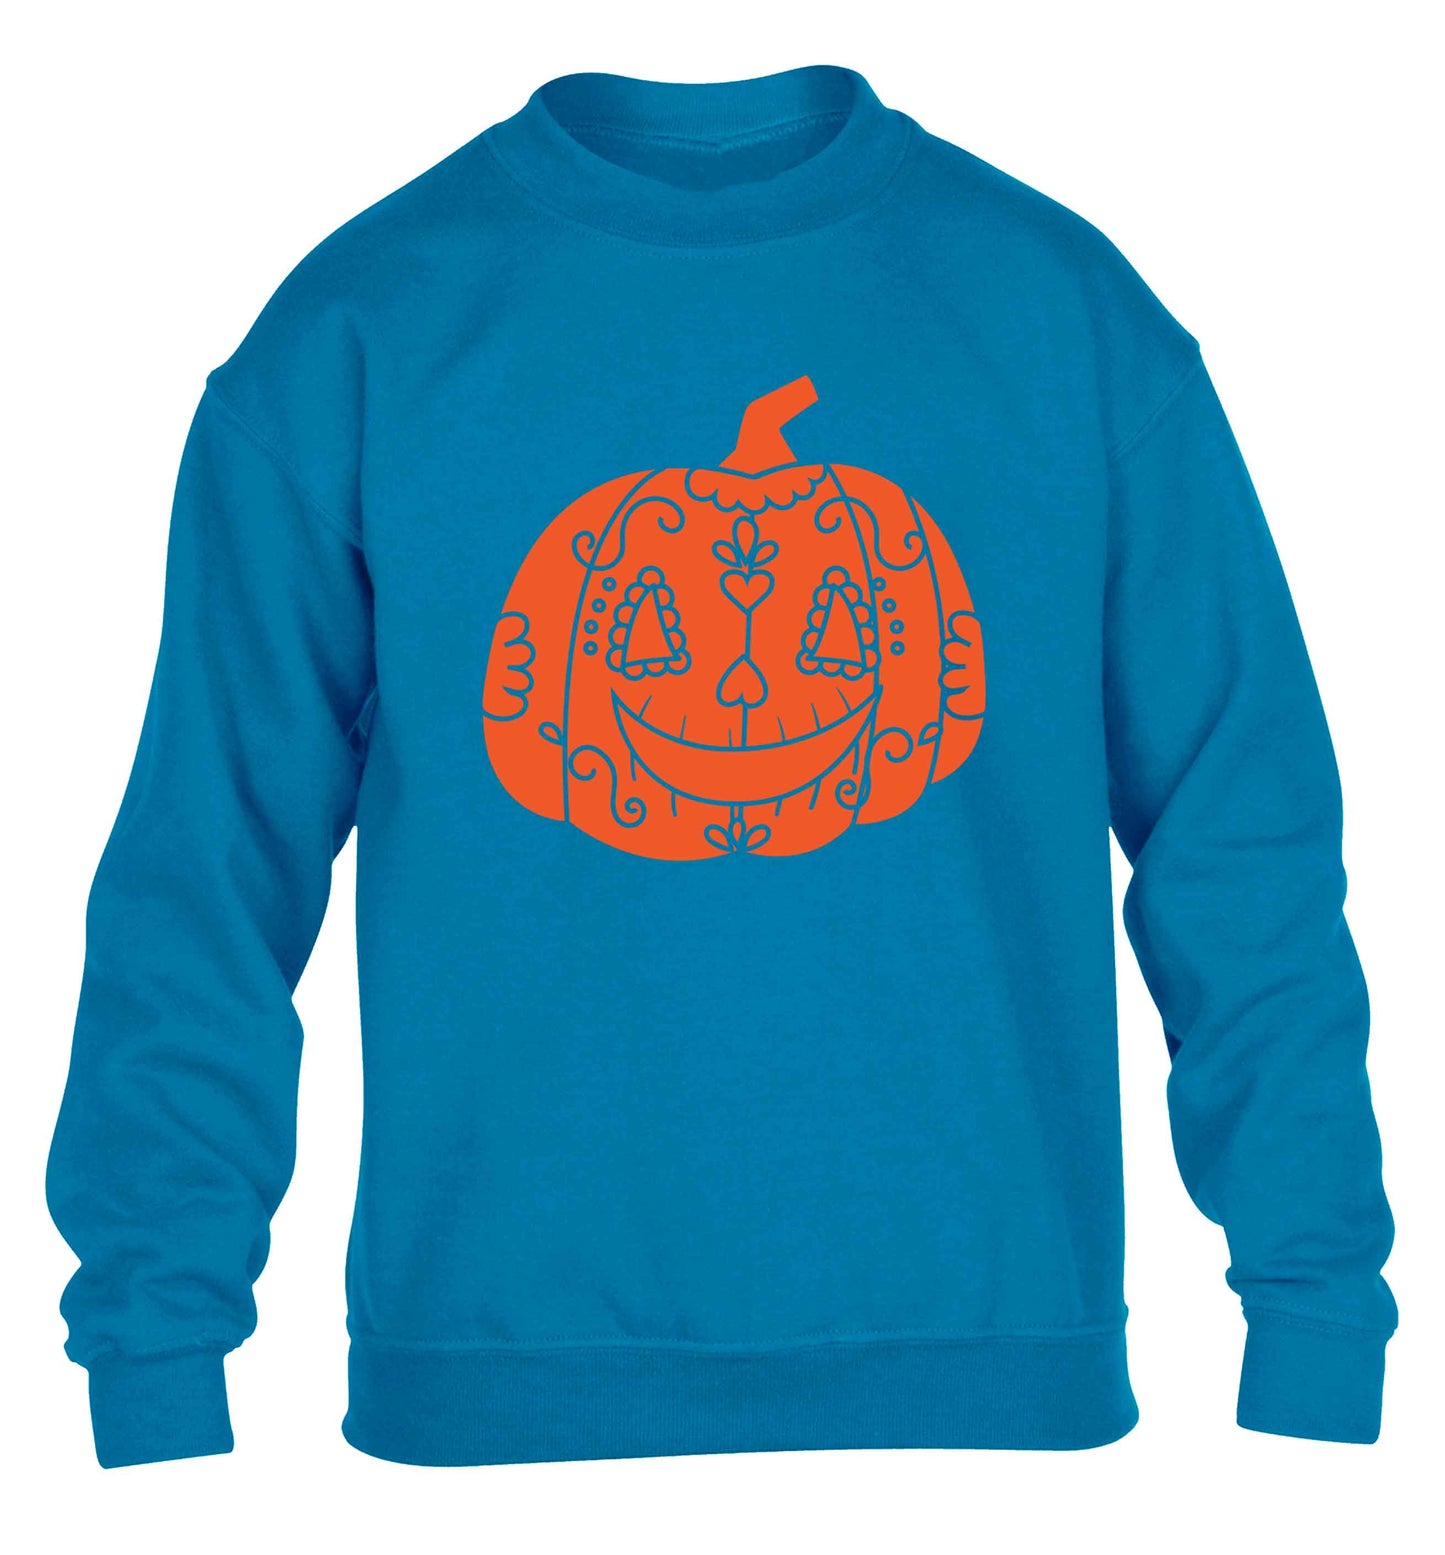 Pumpkin sugar skull children's blue sweater 12-13 Years